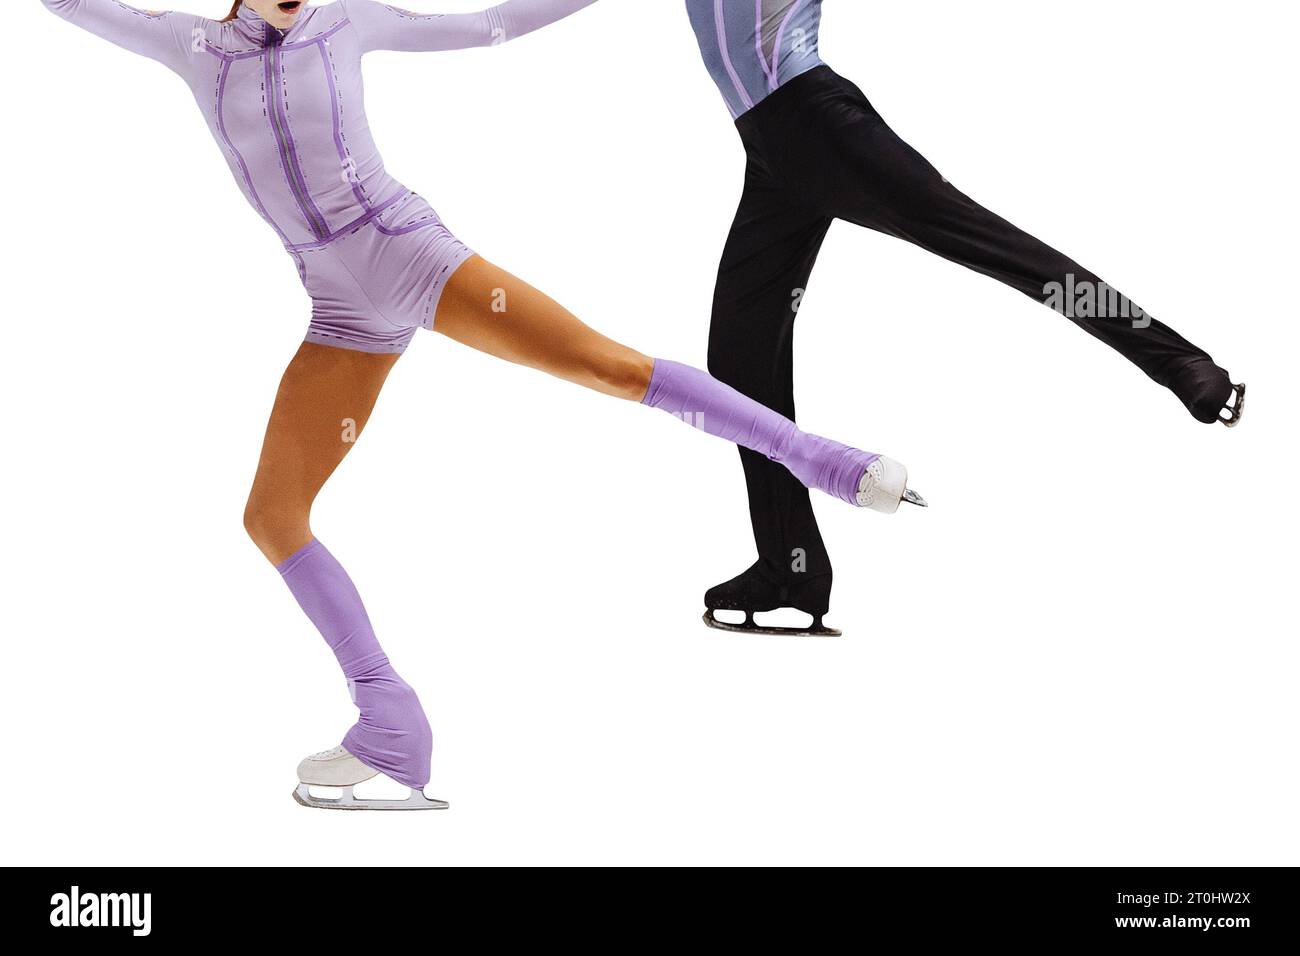 Eiskunstlauf tanzendes Paar im Eiswettbewerb isoliert auf weißem Hintergrund Stockfoto